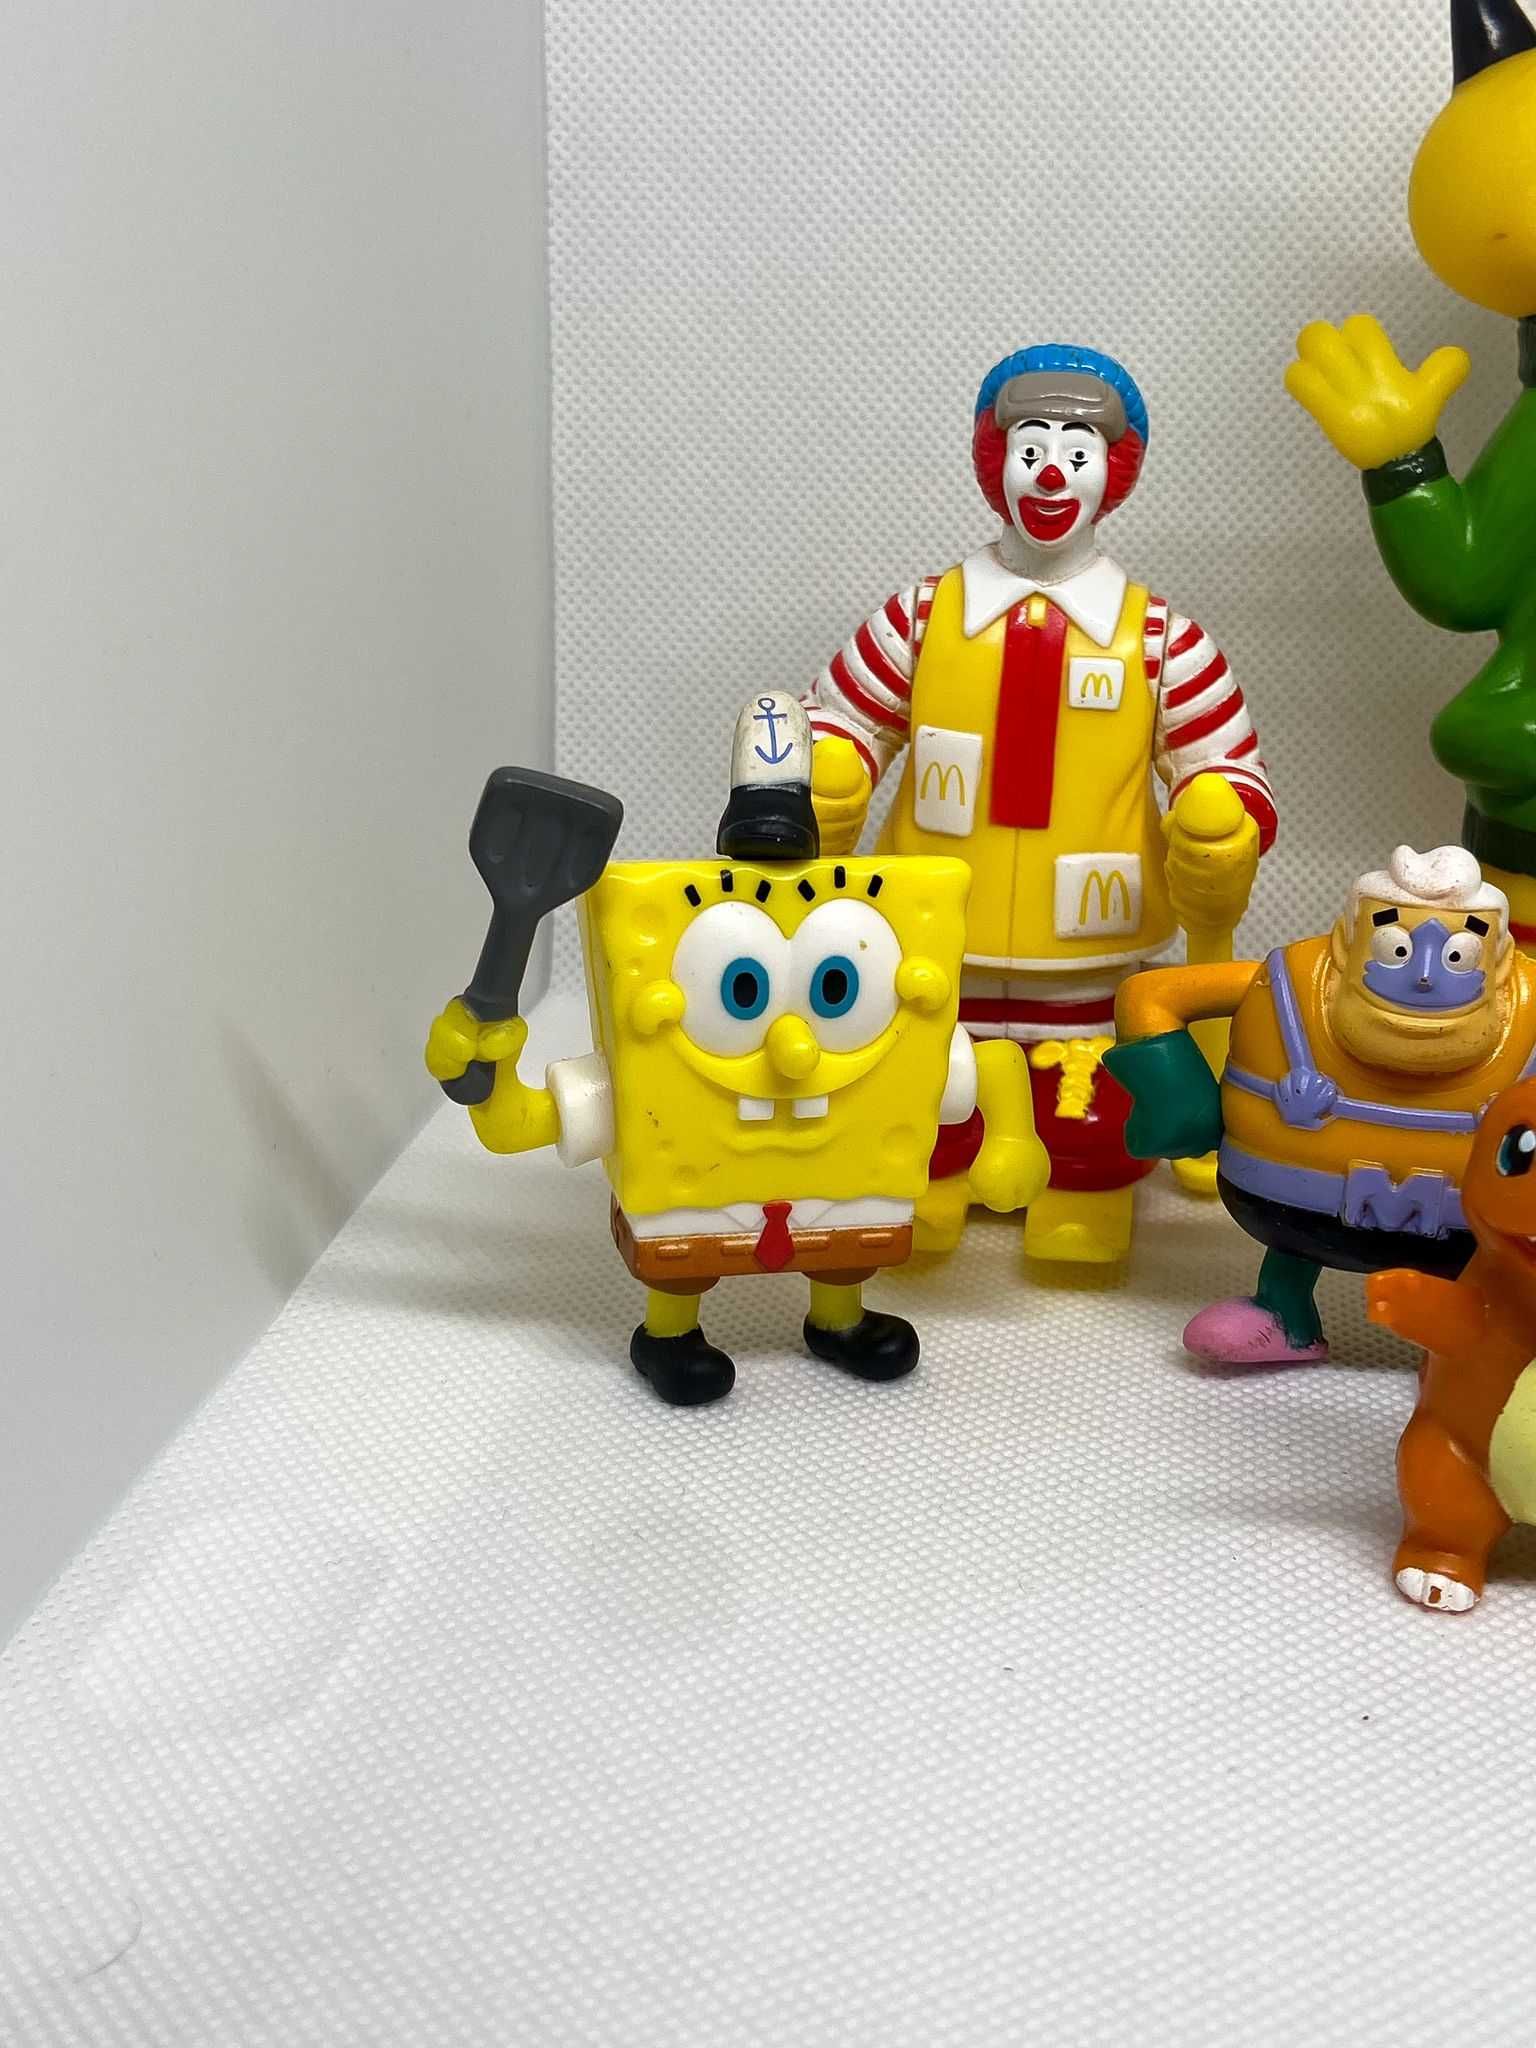 Conjunto de 8 Brinquedos Antigos, Disney, McDonalds, Nintendo e Pixar